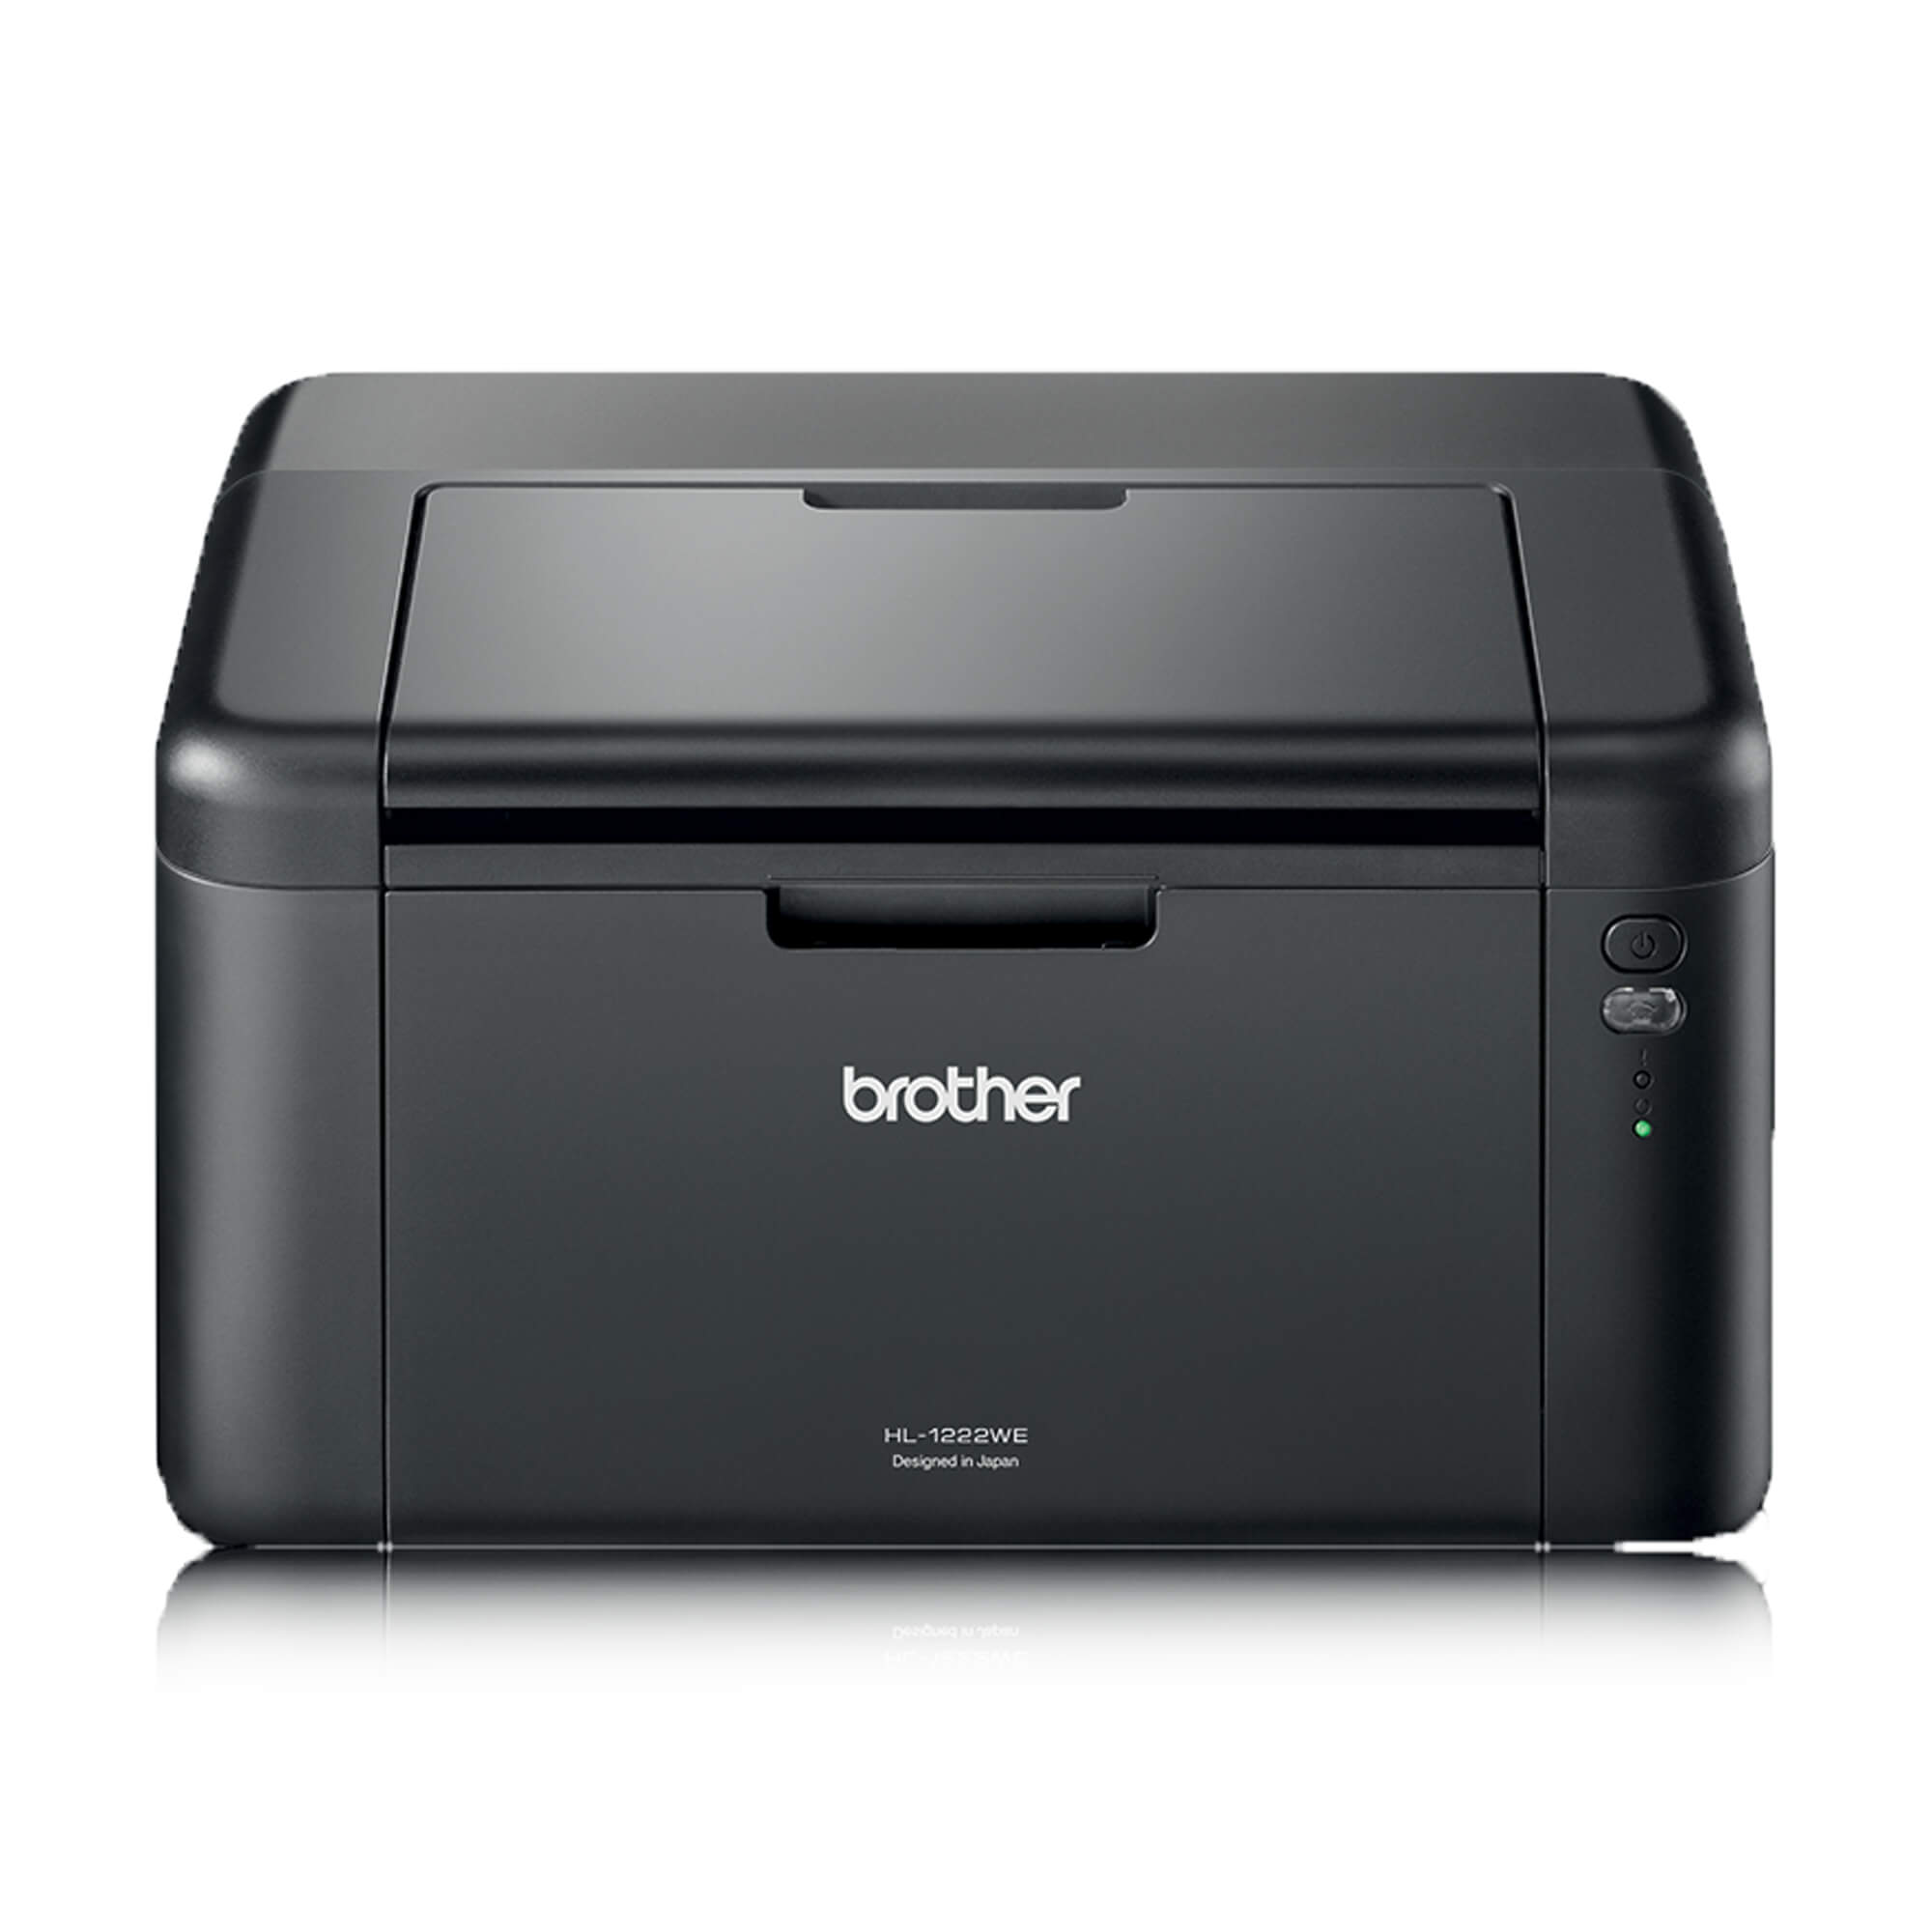 Недорогие принтеры для печати. Лазерный принтер brother hl-1202r. Brother DCP-1602r. Лазерный принтер brother hl-1202r – компактная модель. Brother 1602r.